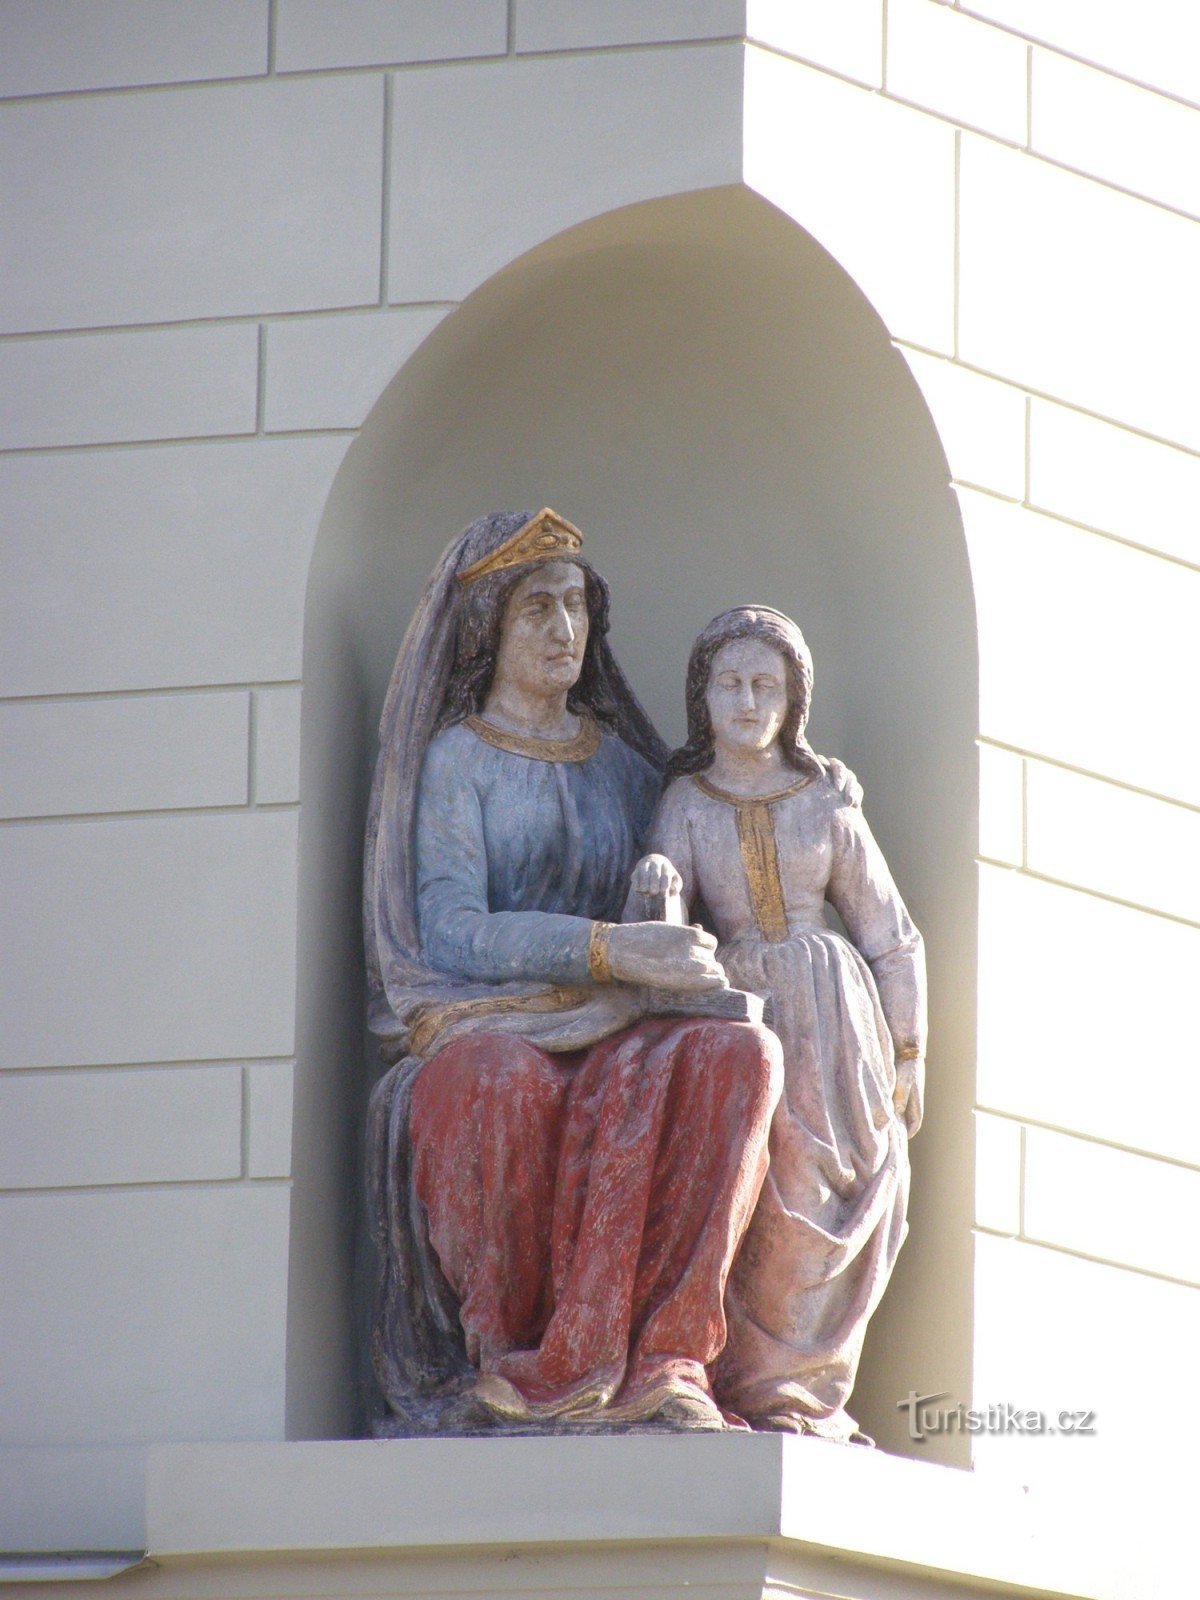 Тинець над Лабом - міщанський будинок № 74 зі статуєю св. Анни і Діви Марії